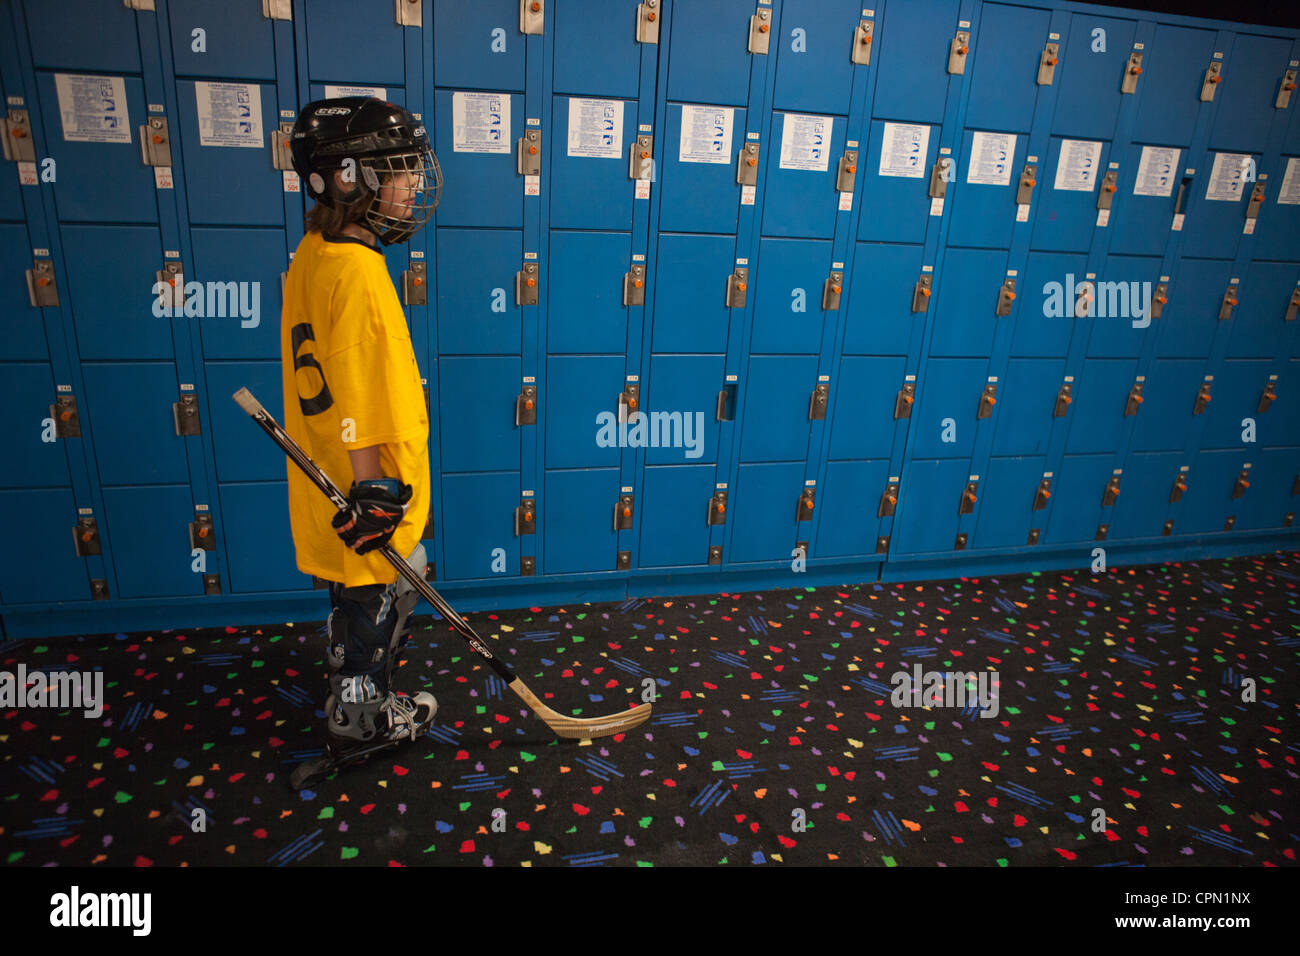 Neun Jahre alten Jungen für Rollhockey stehen vor einer Wand blaue Schließfächer gekleidet. Stockfoto